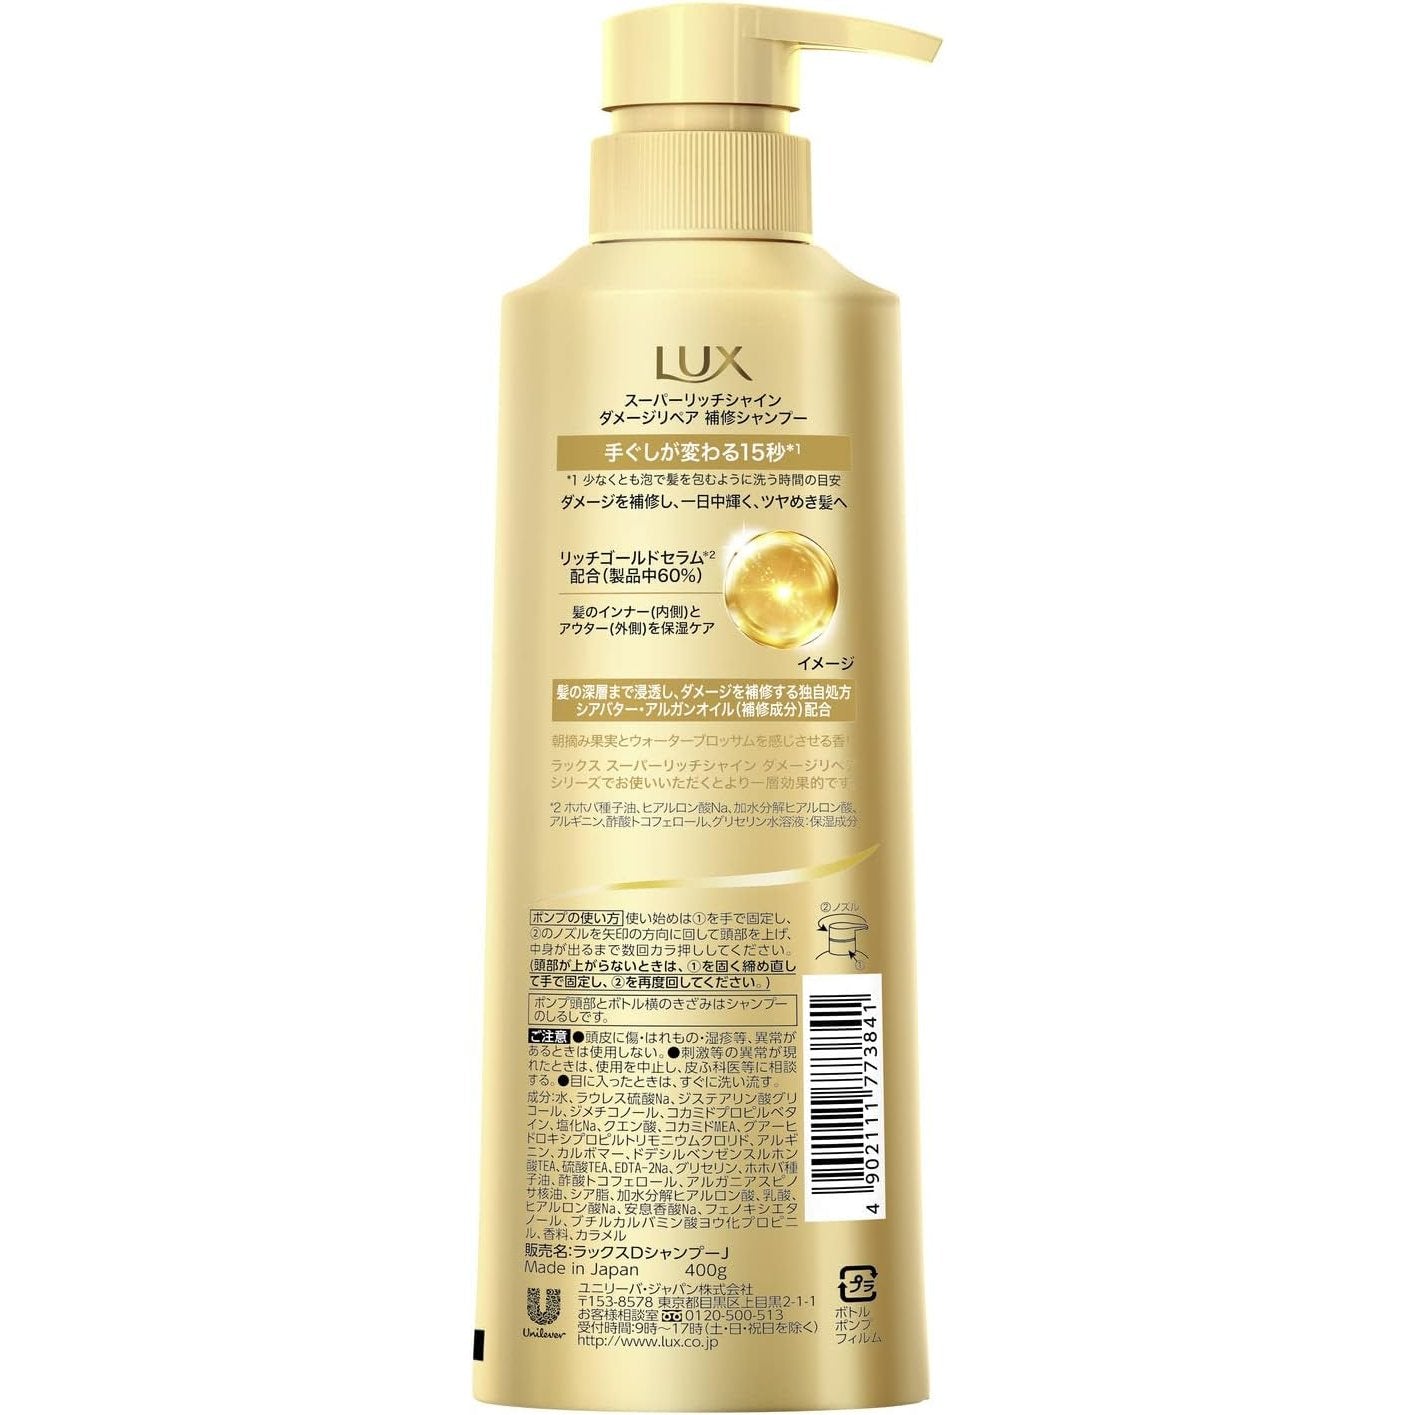 Lux Super Rich Shine Damage Repair Shampoo 400g